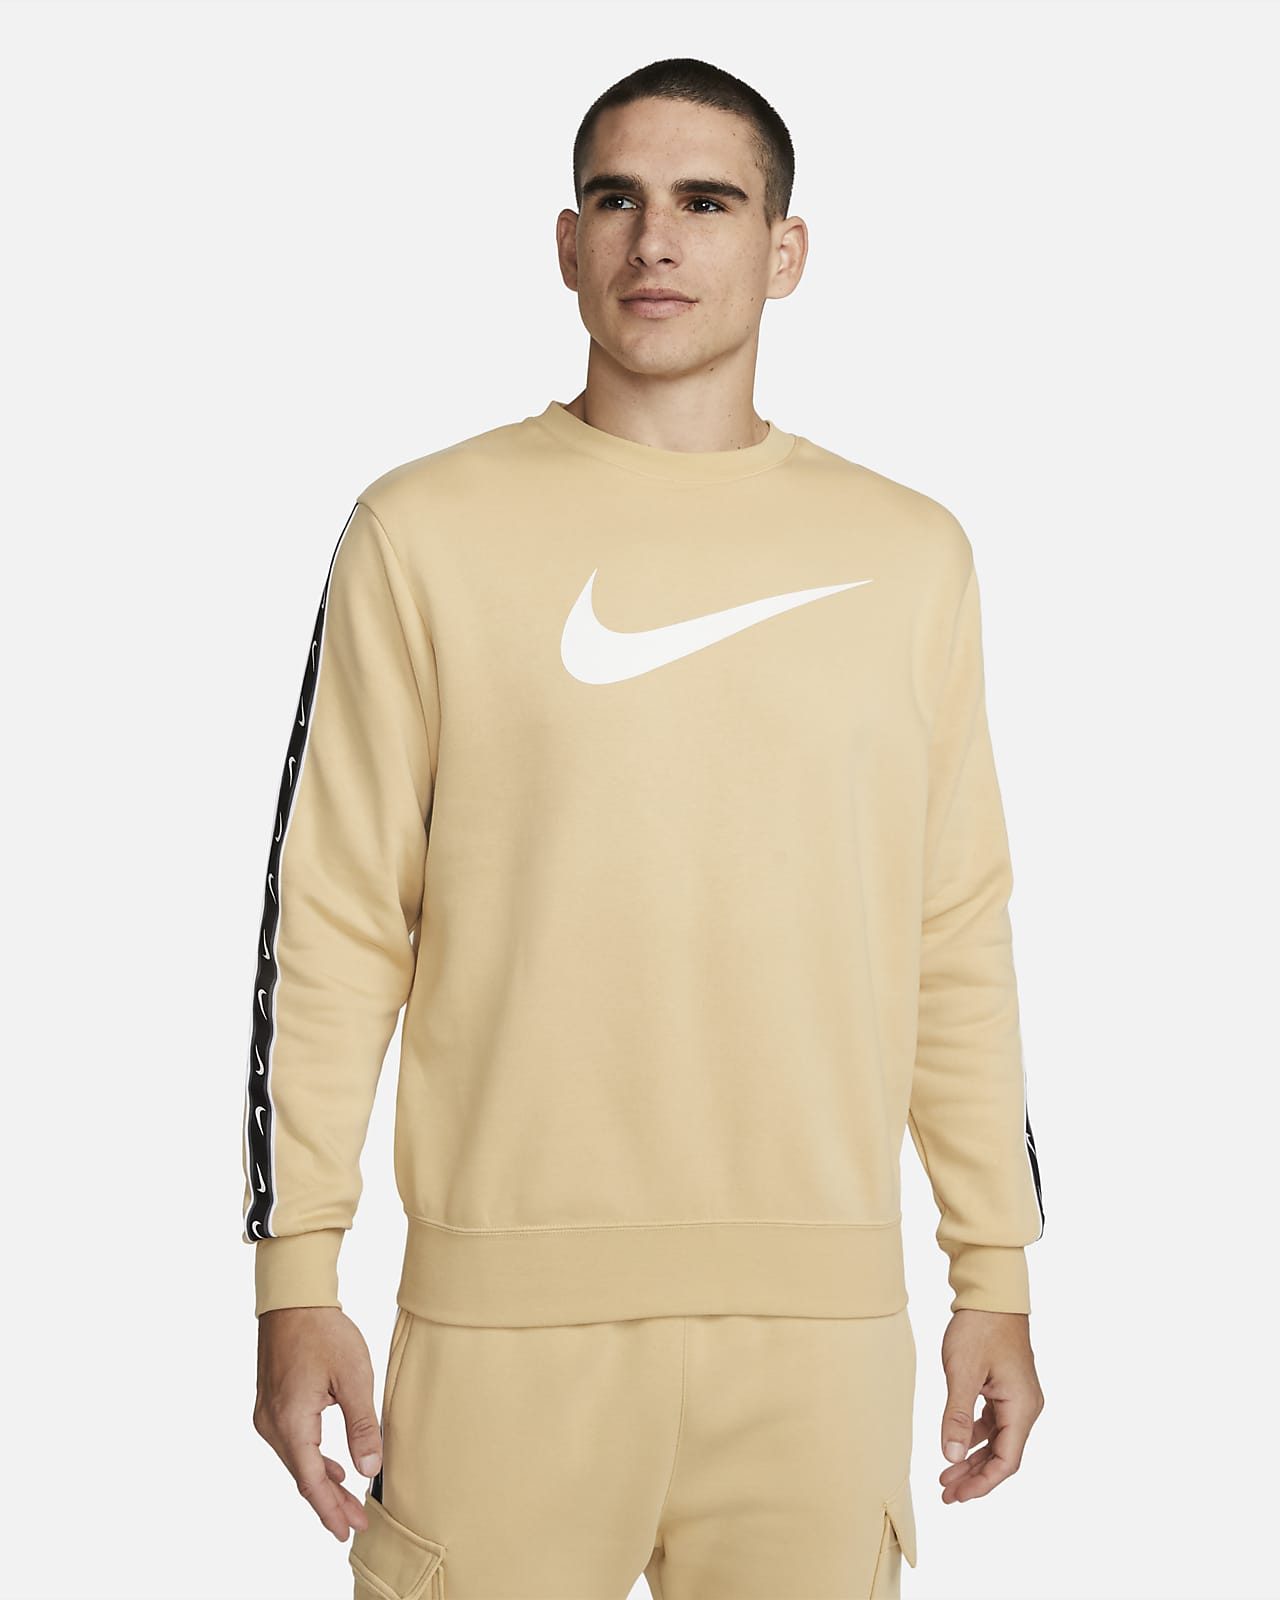 Nike Sportswear Repeat-sweatshirt i fleece til mænd. DK